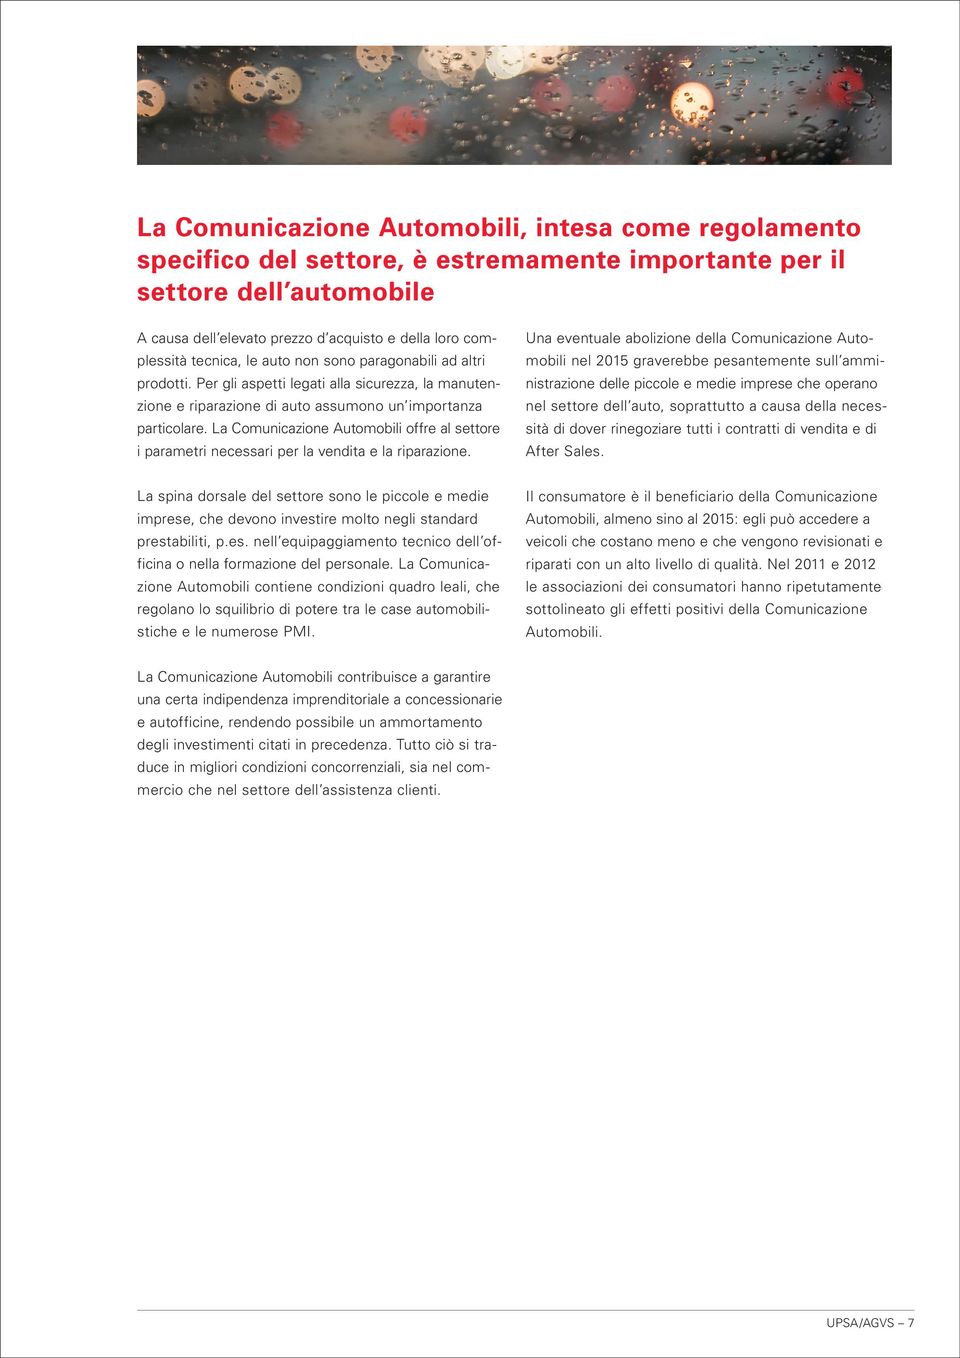 La Comunicazione Automobili offre al settore i parametri necessari per la vendita e la riparazione.